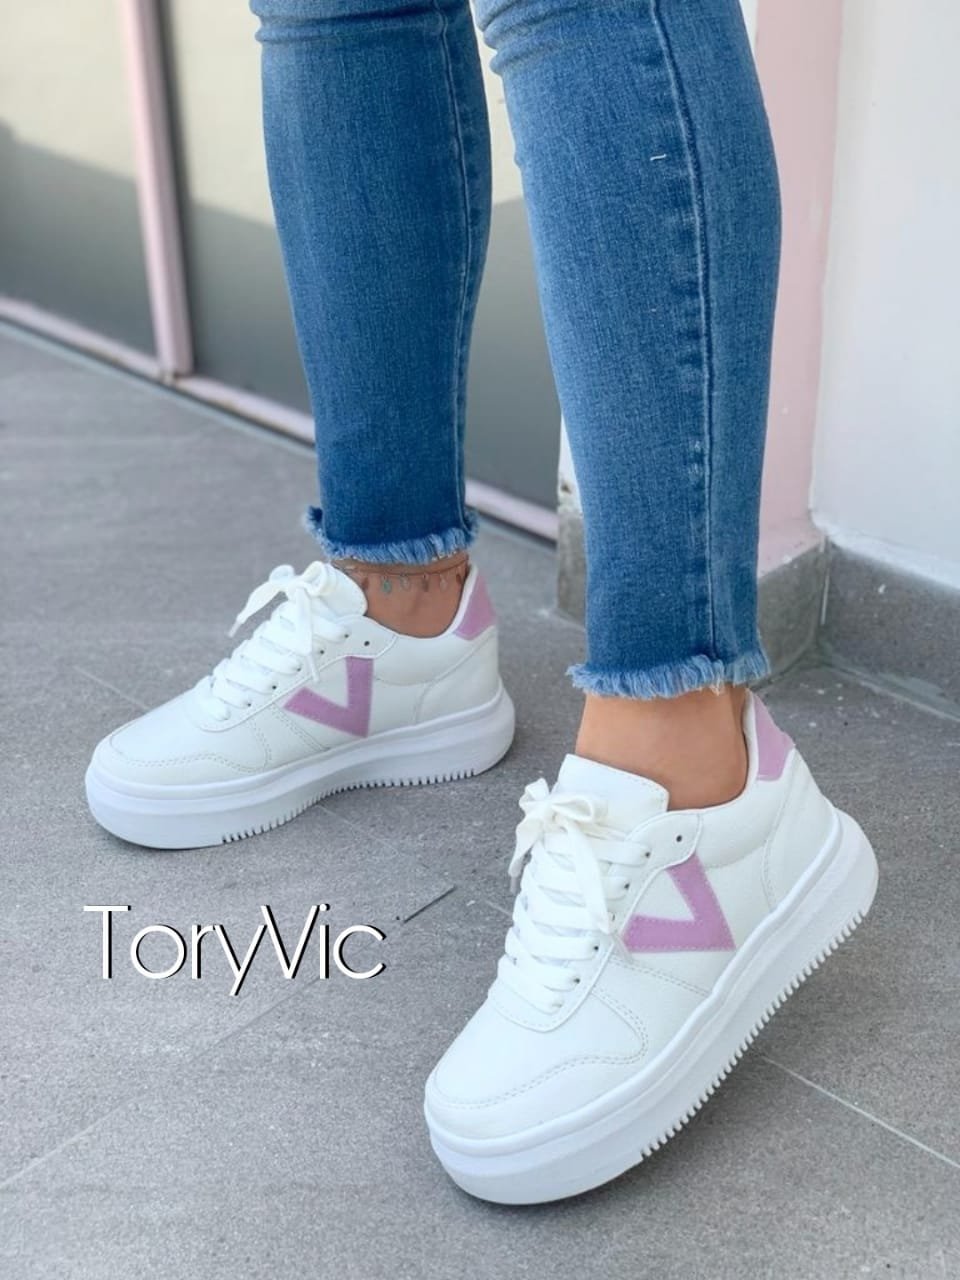 Tenis de - V-classic blanco lila ToryVic